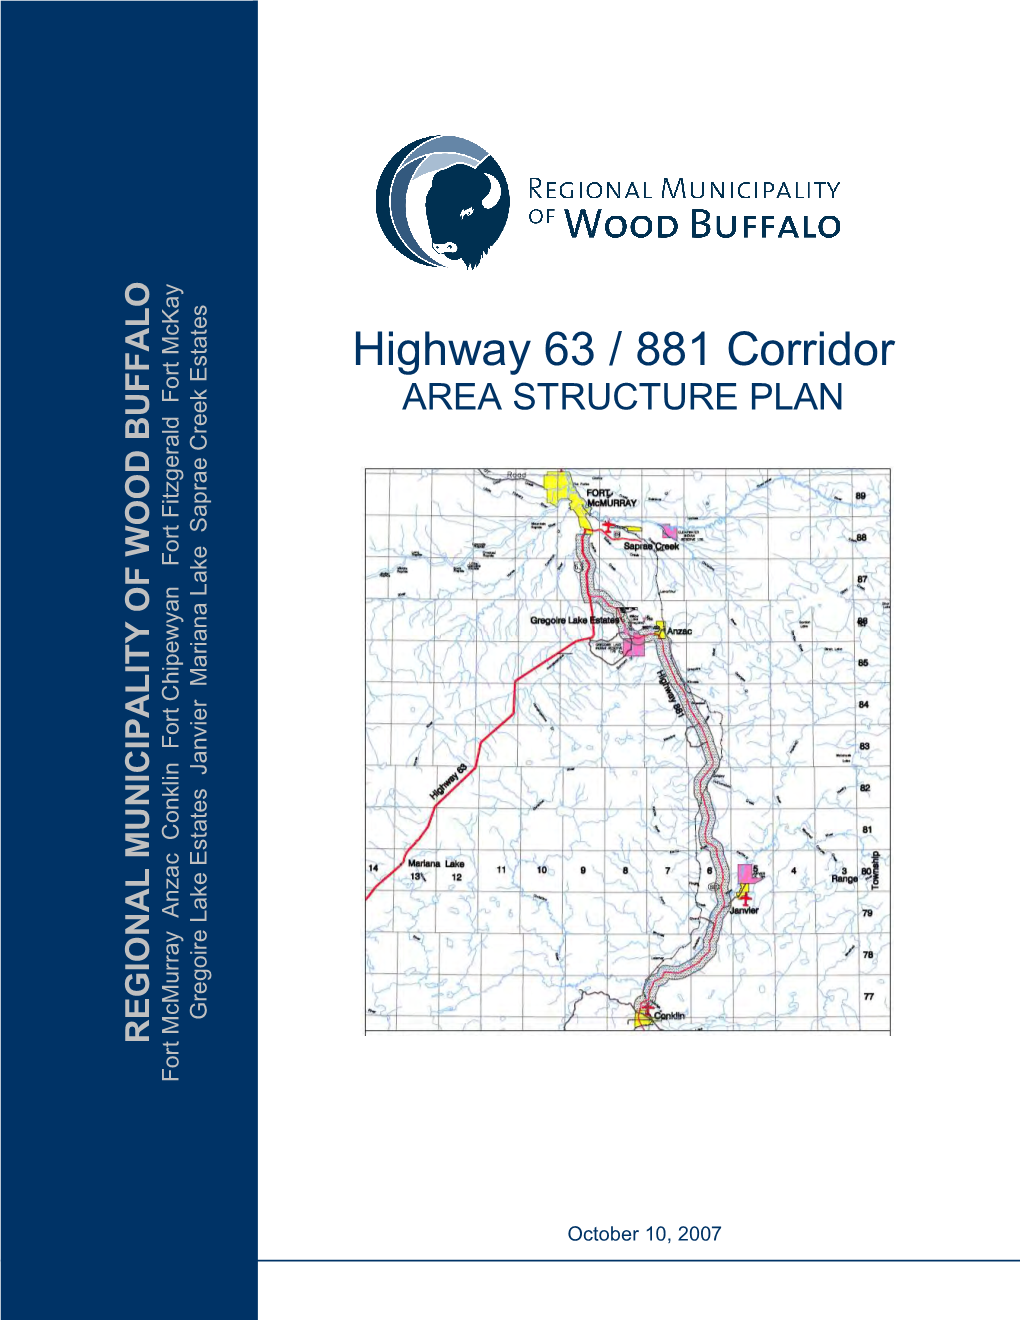 Highway 63 / 881 Corridor